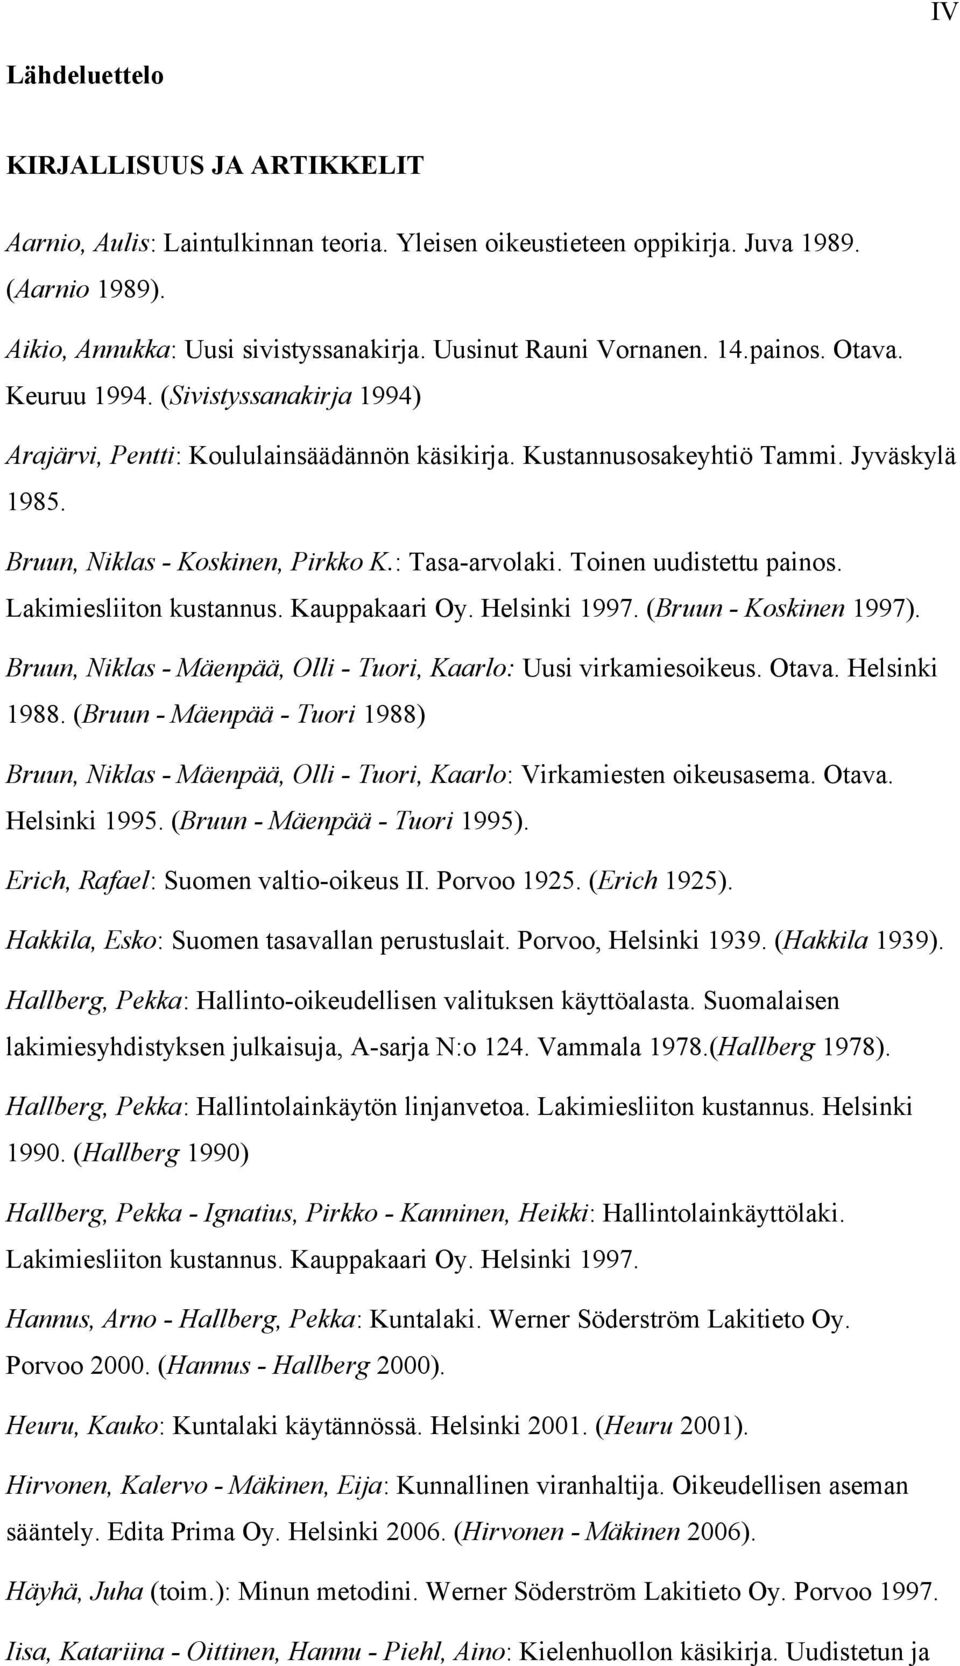 Bruun, Niklas - Koskinen, Pirkko K.: Tasa-arvolaki. Toinen uudistettu painos. Lakimiesliiton kustannus. Kauppakaari Oy. Helsinki 1997. (Bruun - Koskinen 1997).